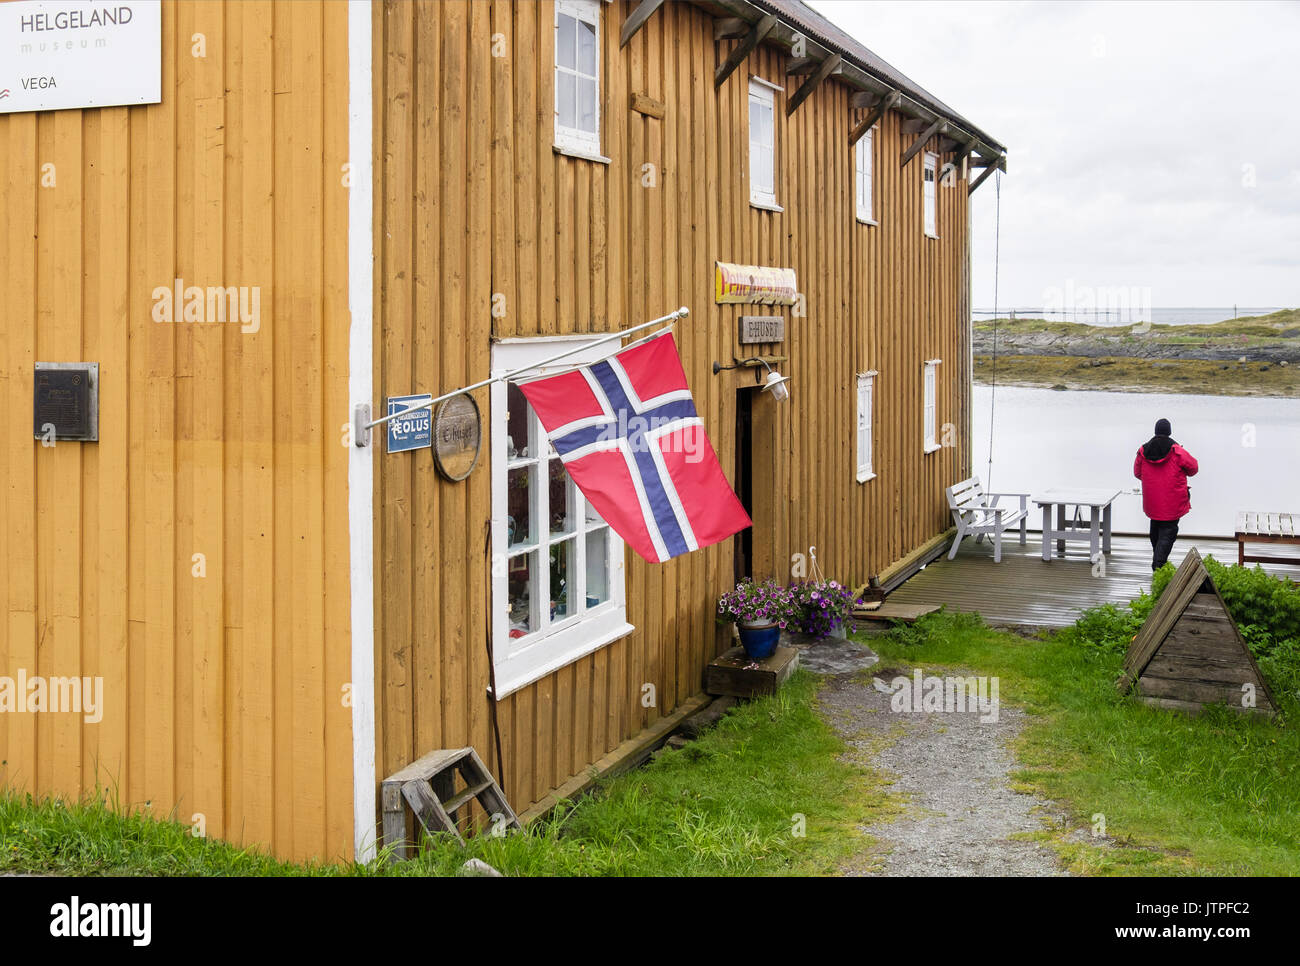 Helgeland Museum Visualizza di Eider anitra giù la raccolta in un edificio in legno. Nes, Vega Isola, Nordland, Norvegia e Scandinavia Foto Stock